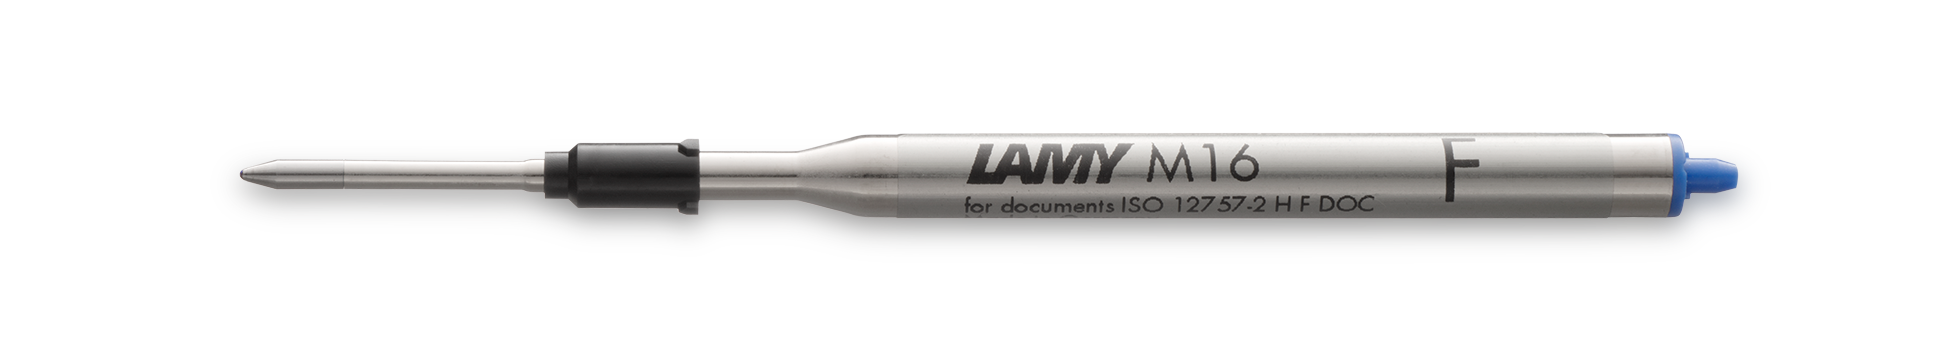 Lamy M16 Kugelschreiber-Mine 